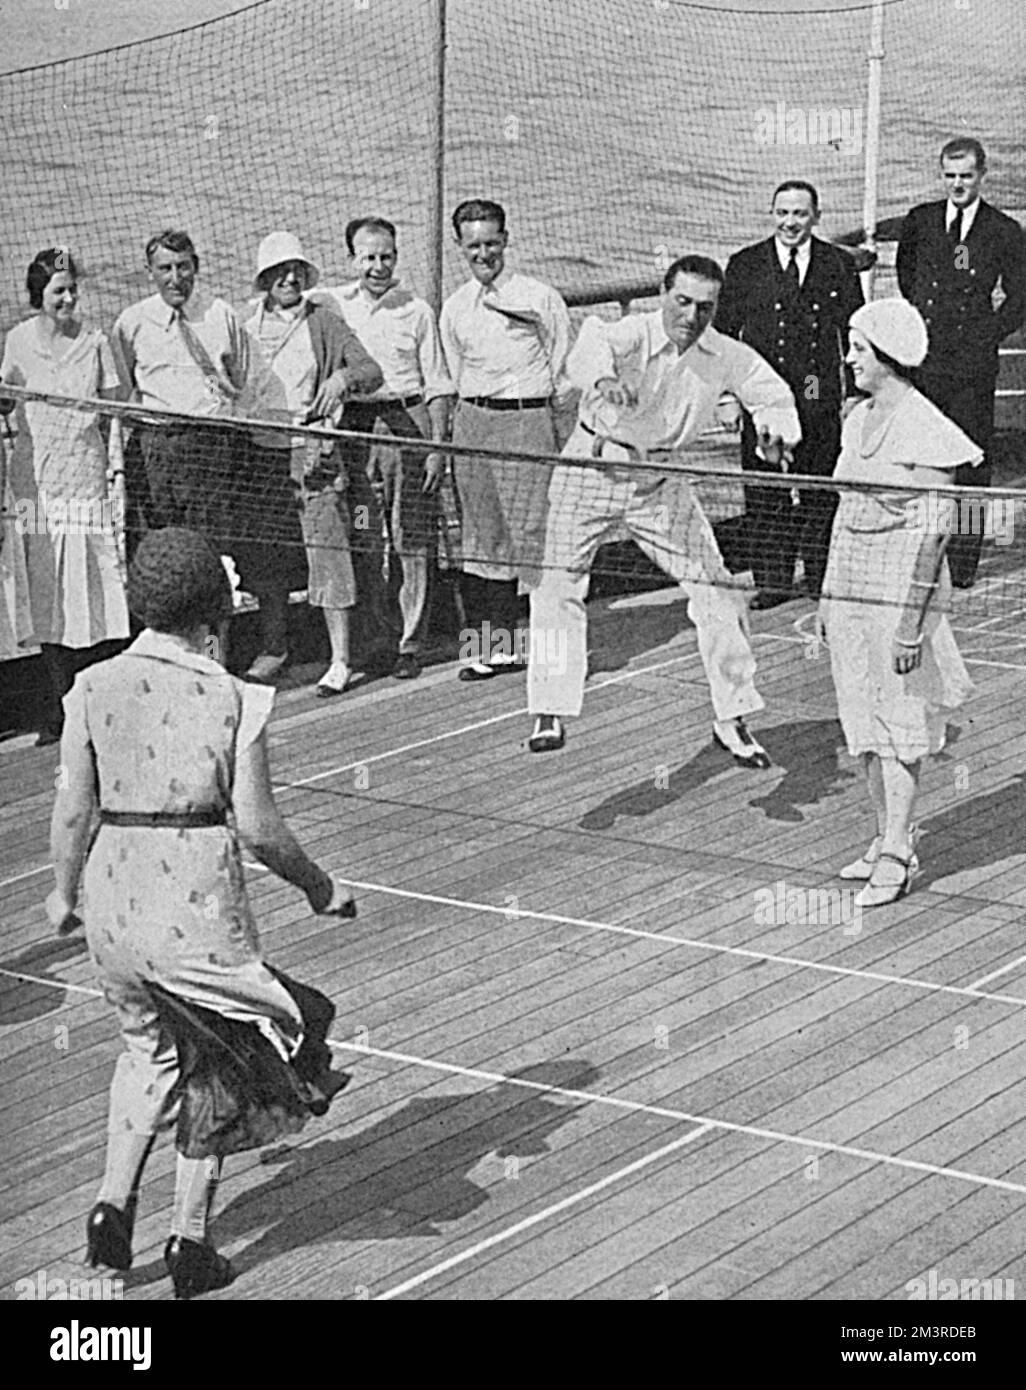 Die Passagiere spielen eine Form des Tennisspiels, gespielt von Hand mit einem Gummiring an Bord der Berengaria. Datum: 1931 Stockfoto